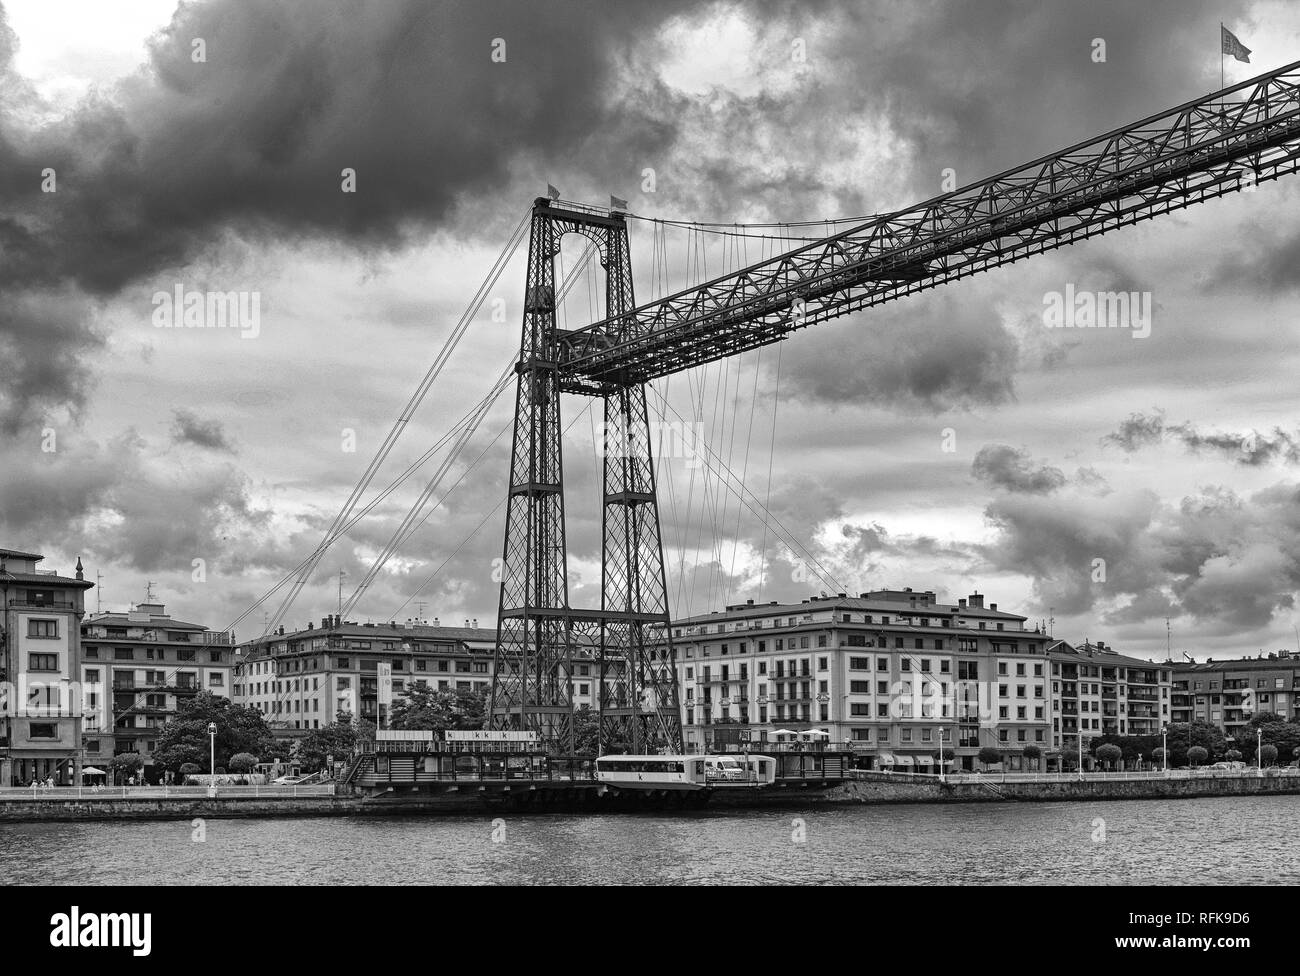 Le pont suspendu de Biscaye (Puente de Vizcaya) entre getxo et portugalete sur la ria de Bilbao, noir et blanc Banque D'Images